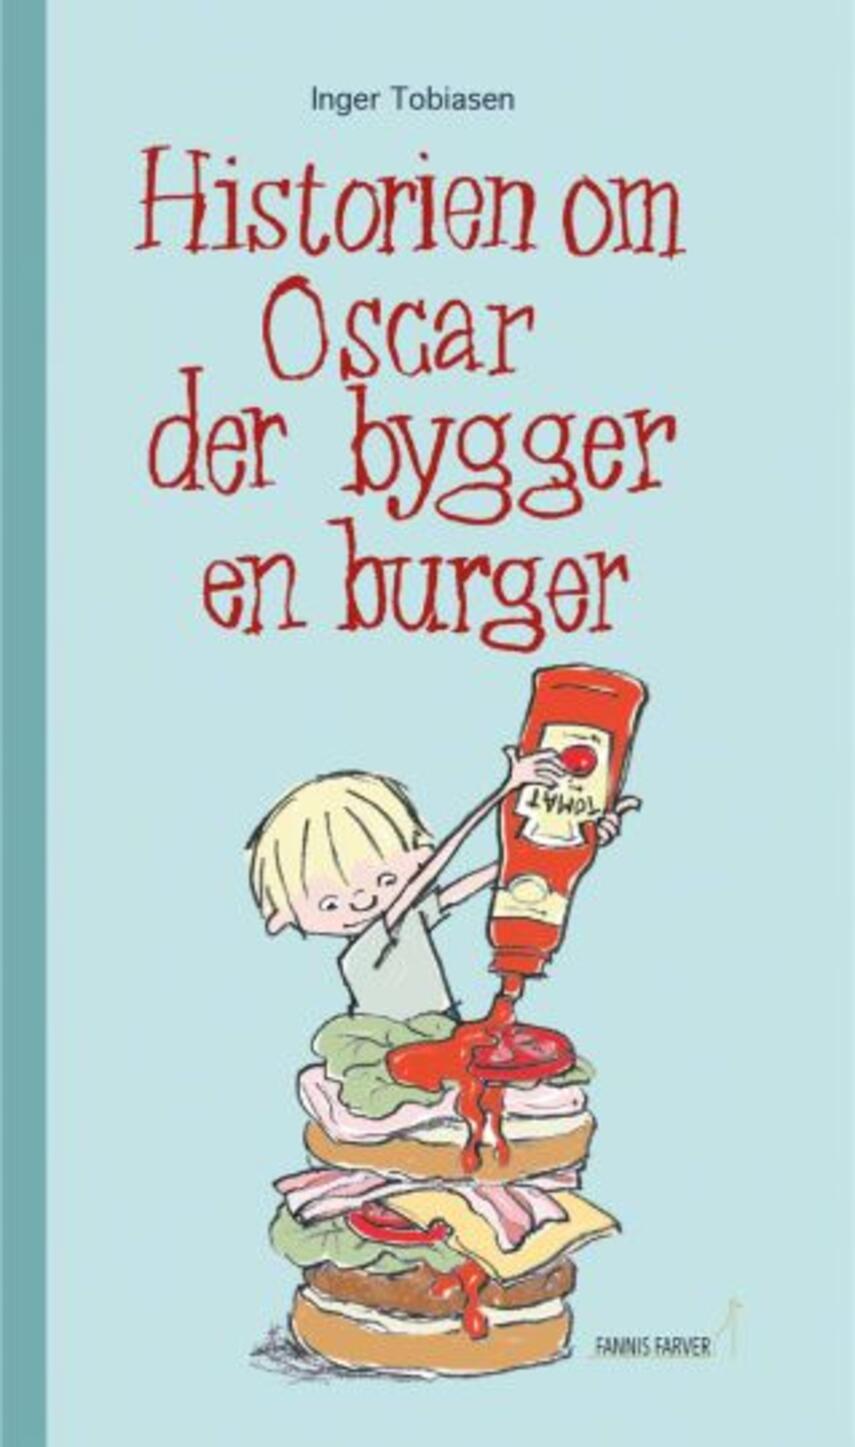 Inger Tobiasen: Historien om Oscar der bygger en burger